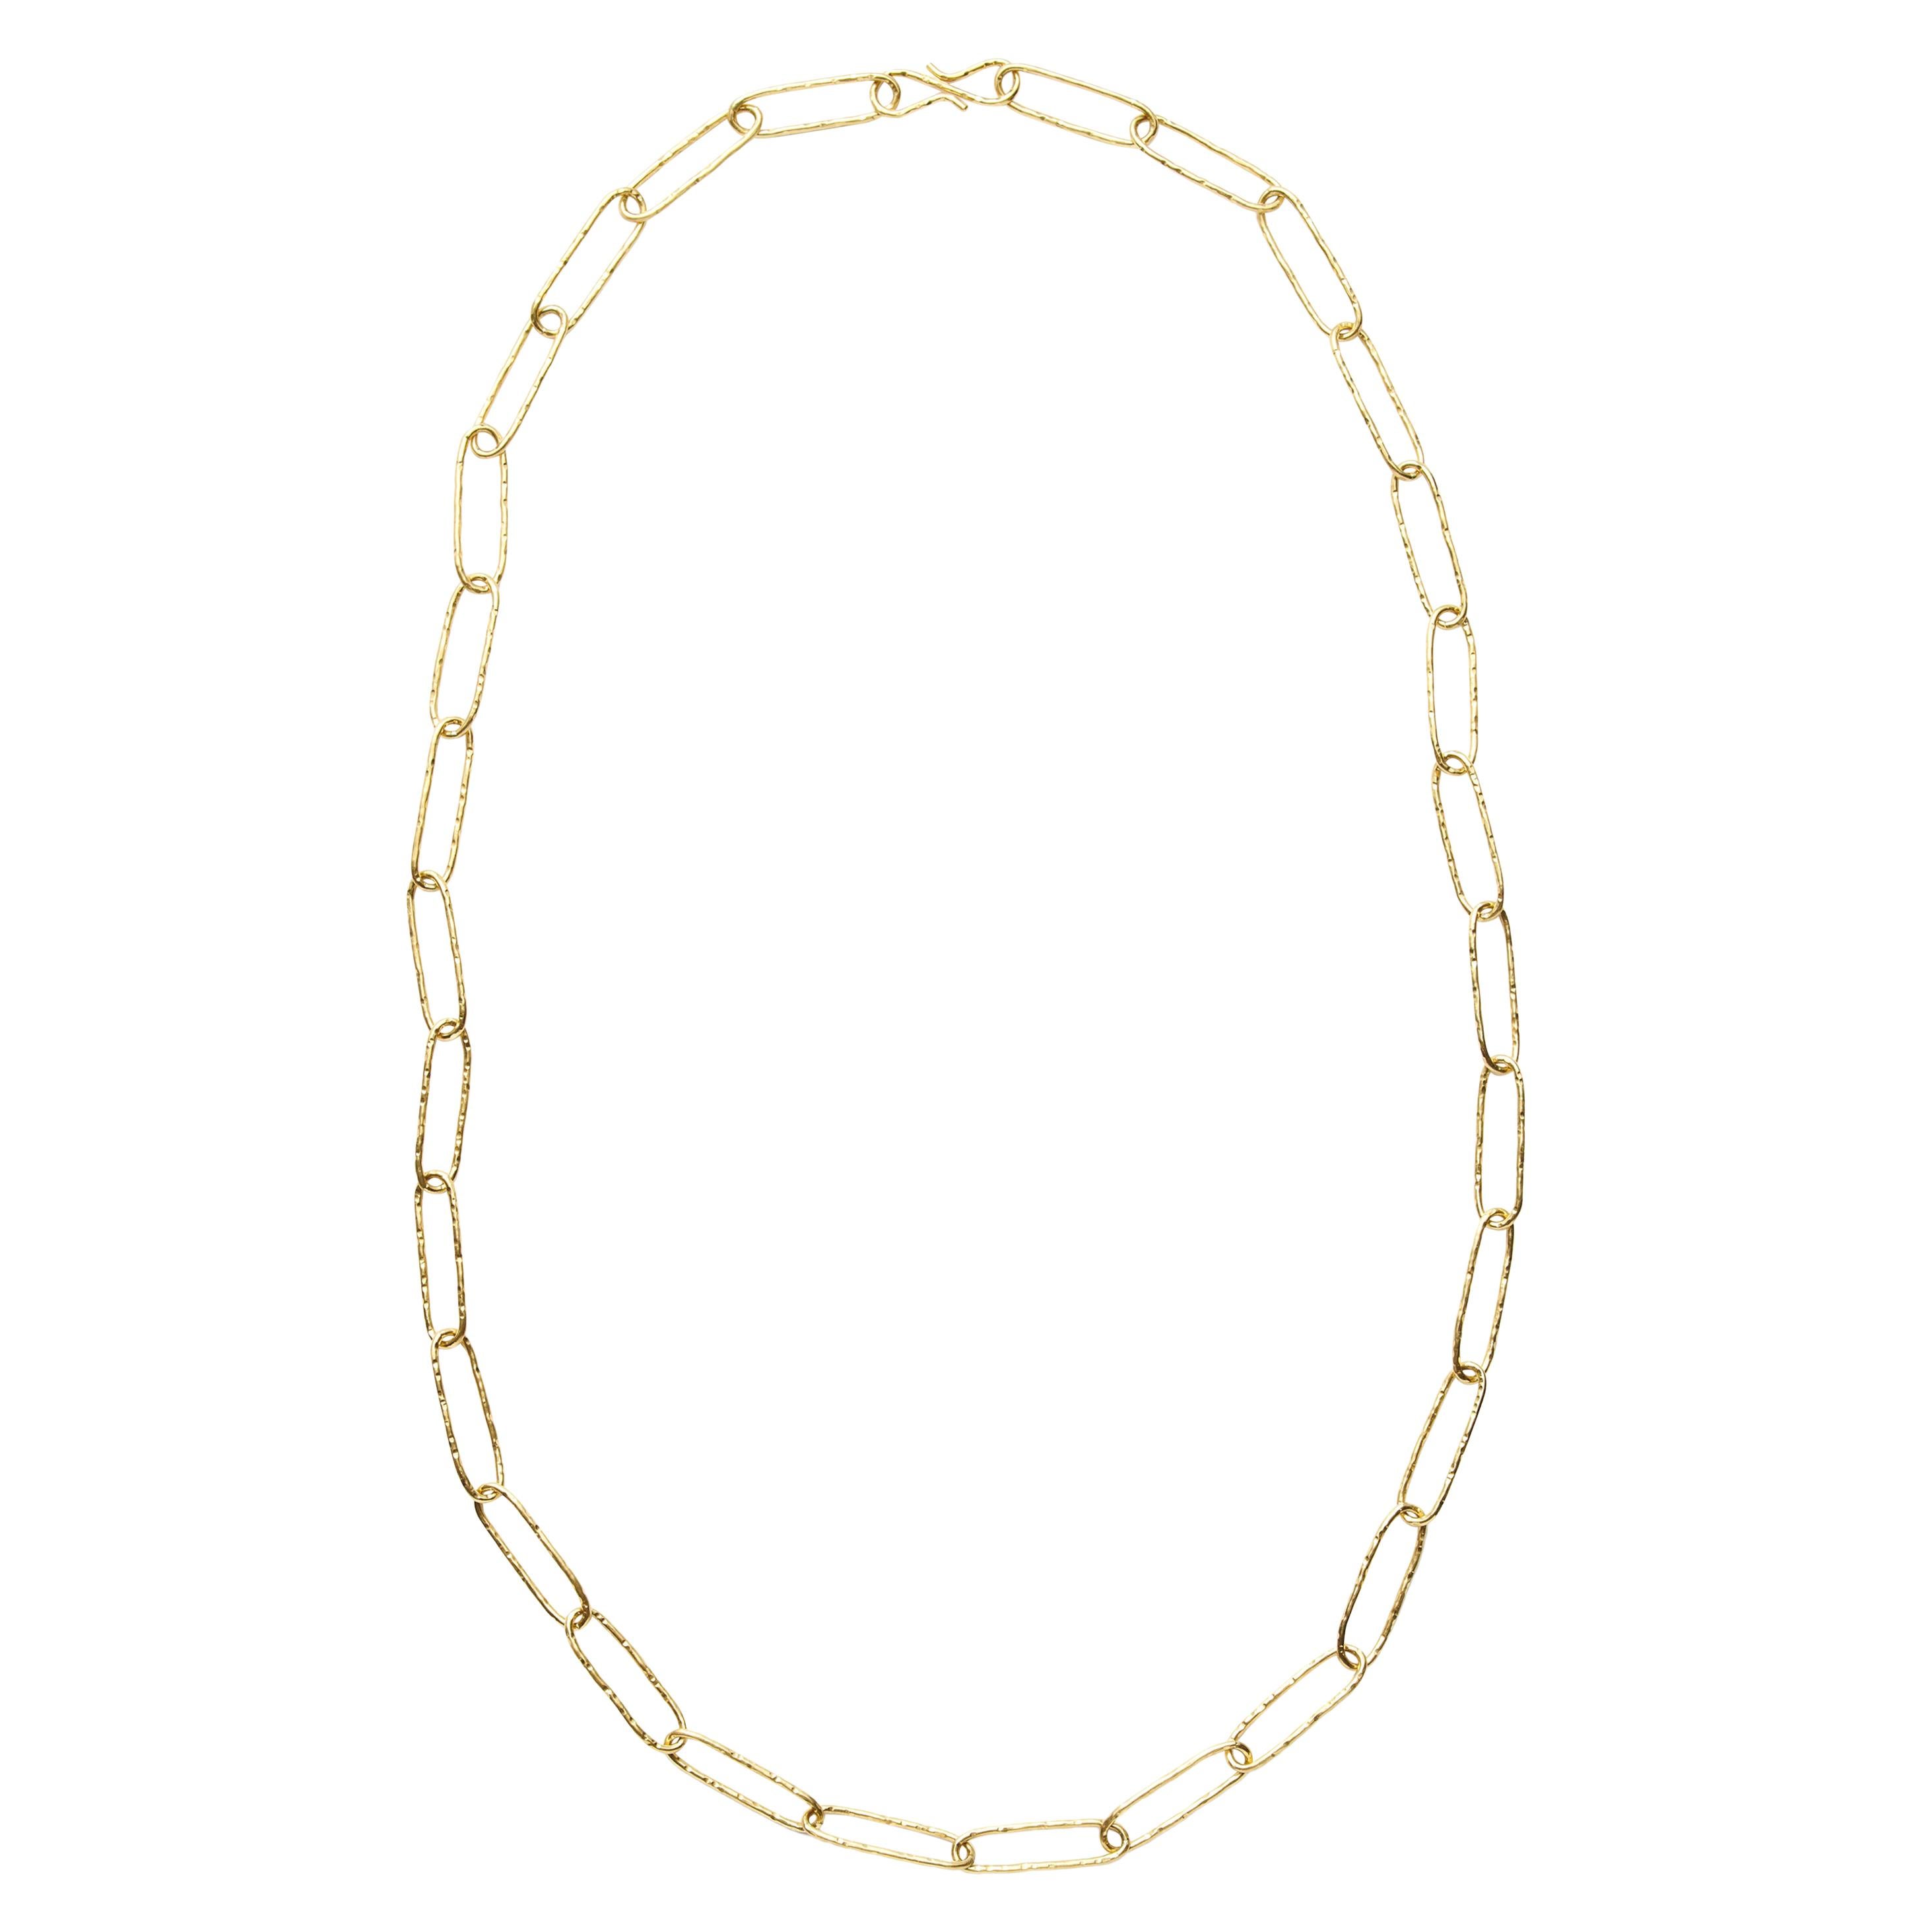 Susan Lister Locke Hand-Hammered Paper Clip Link Necklace in 18 Karat Gold